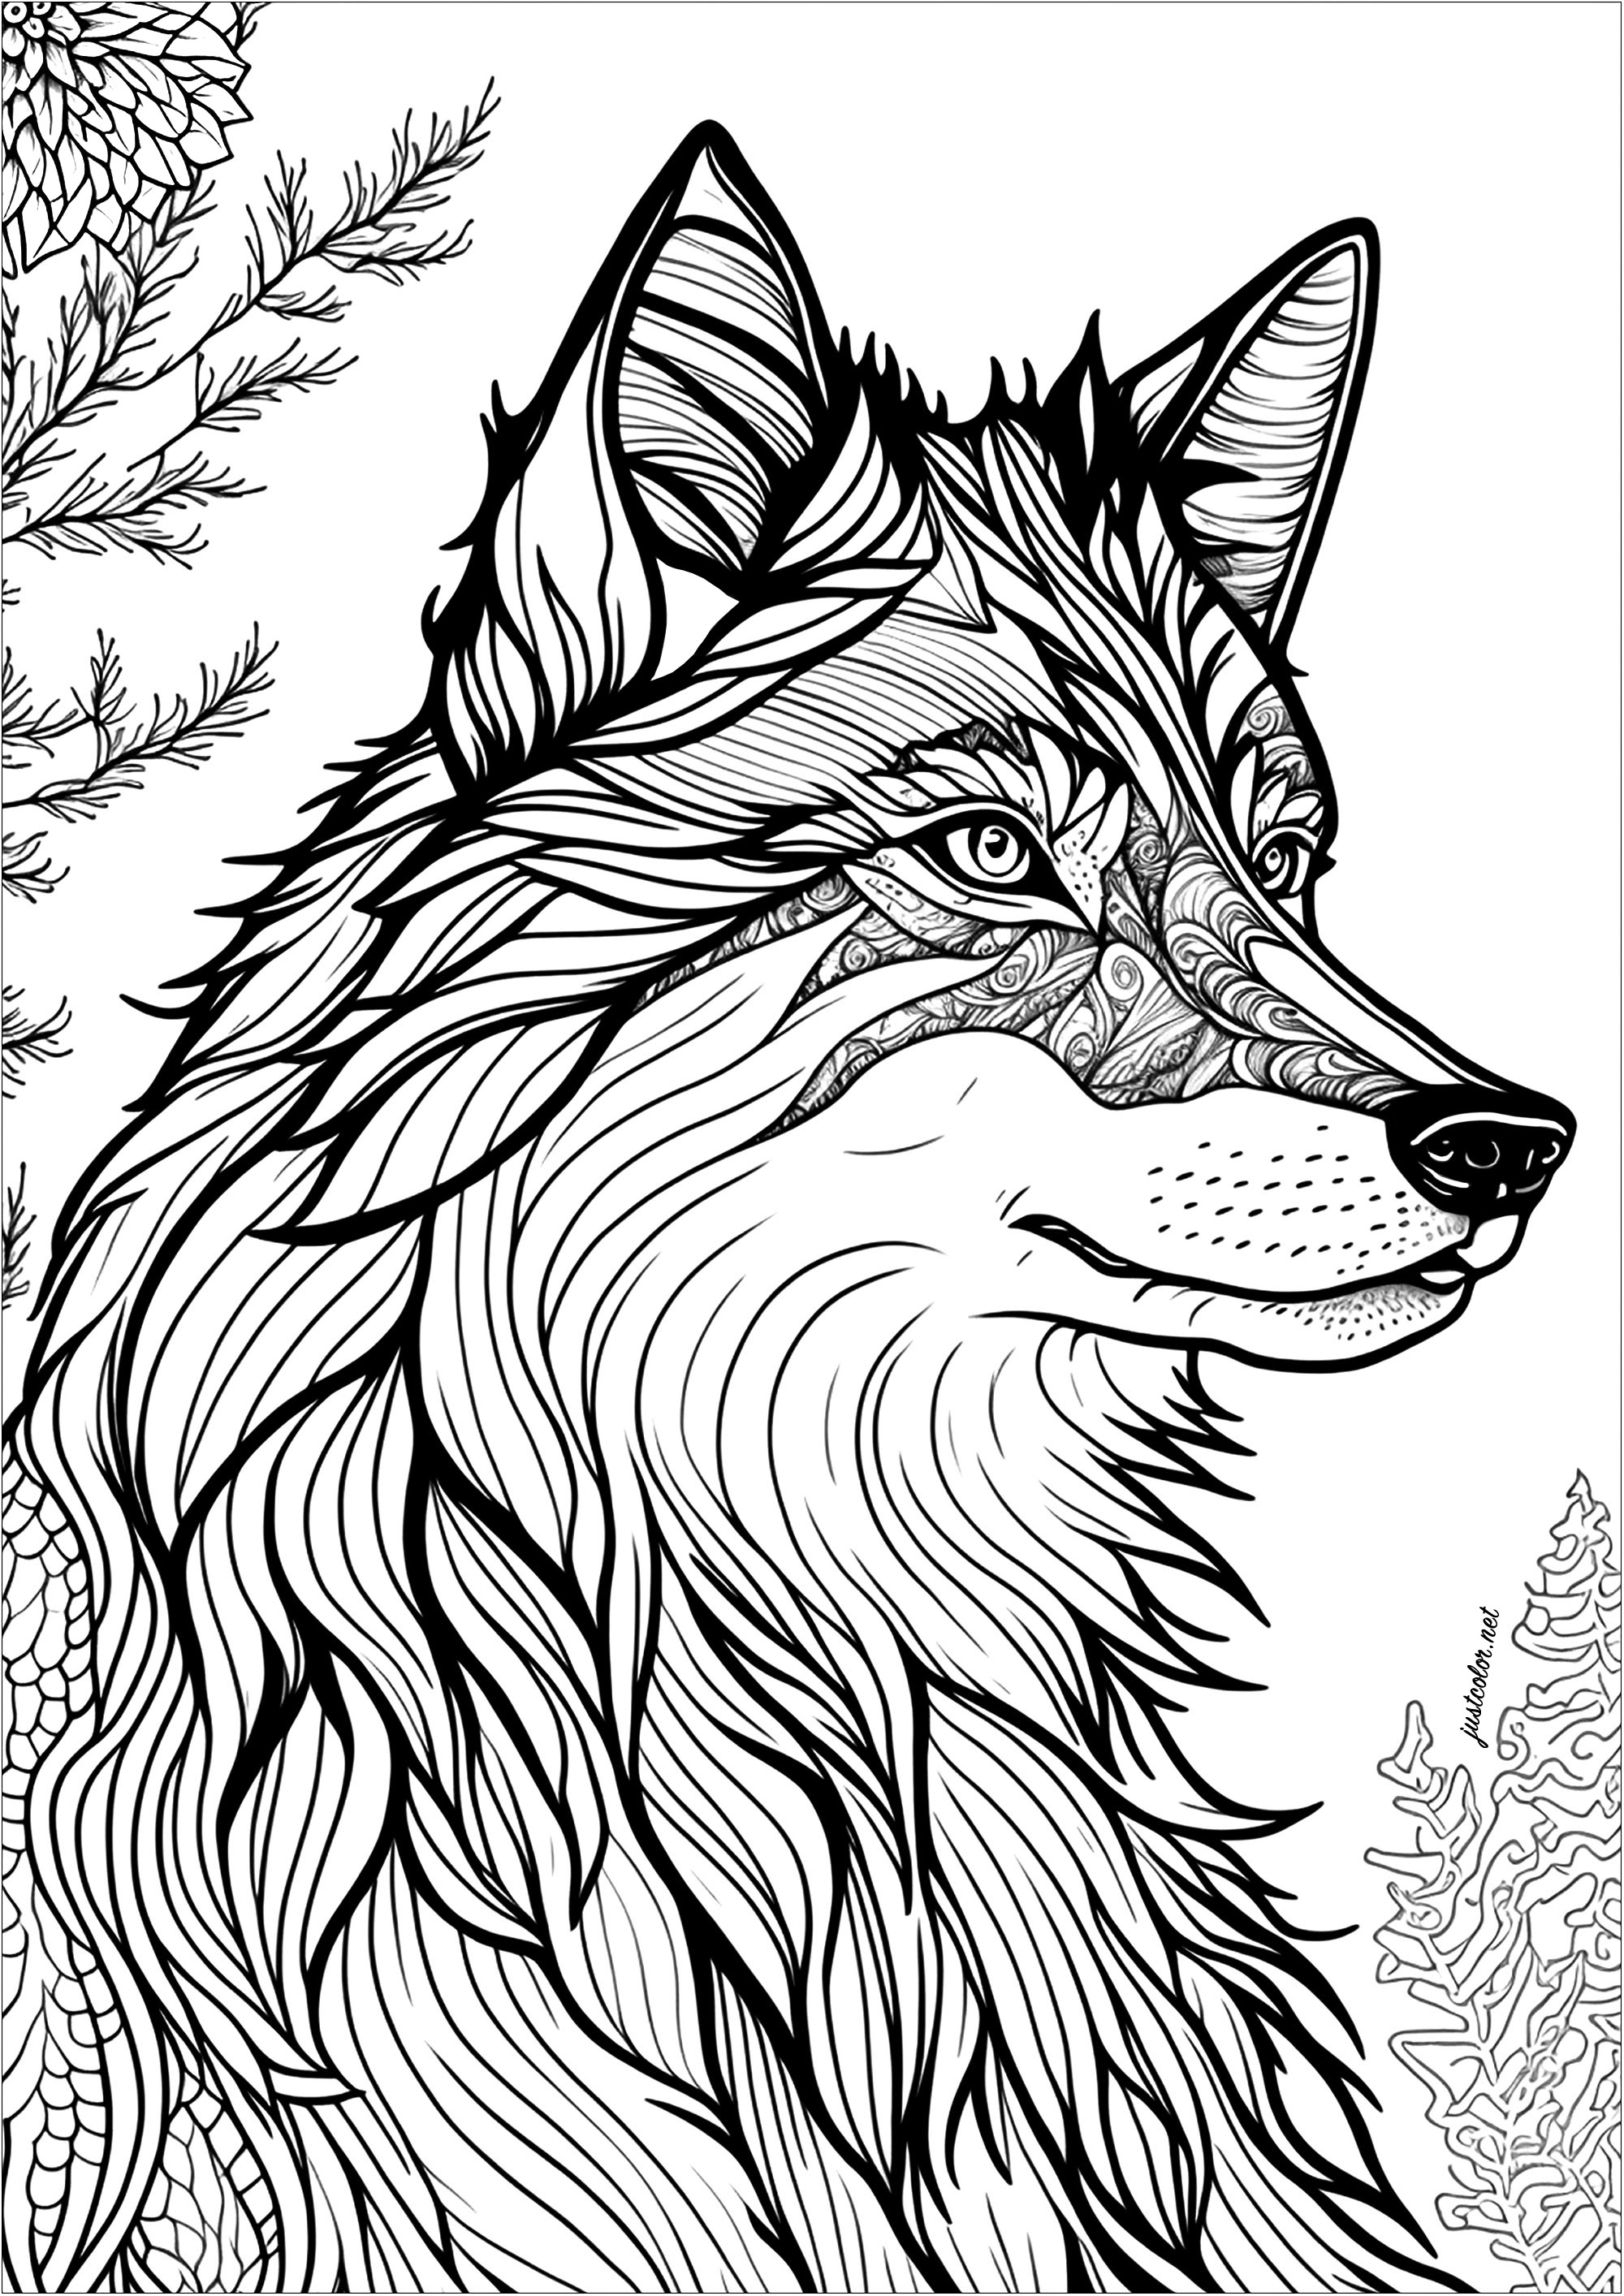 Colorir um lobo, visto de perfil. Os olhos deste lobo são particularmente expressivos, o seu olhar é cativante e misterioso.